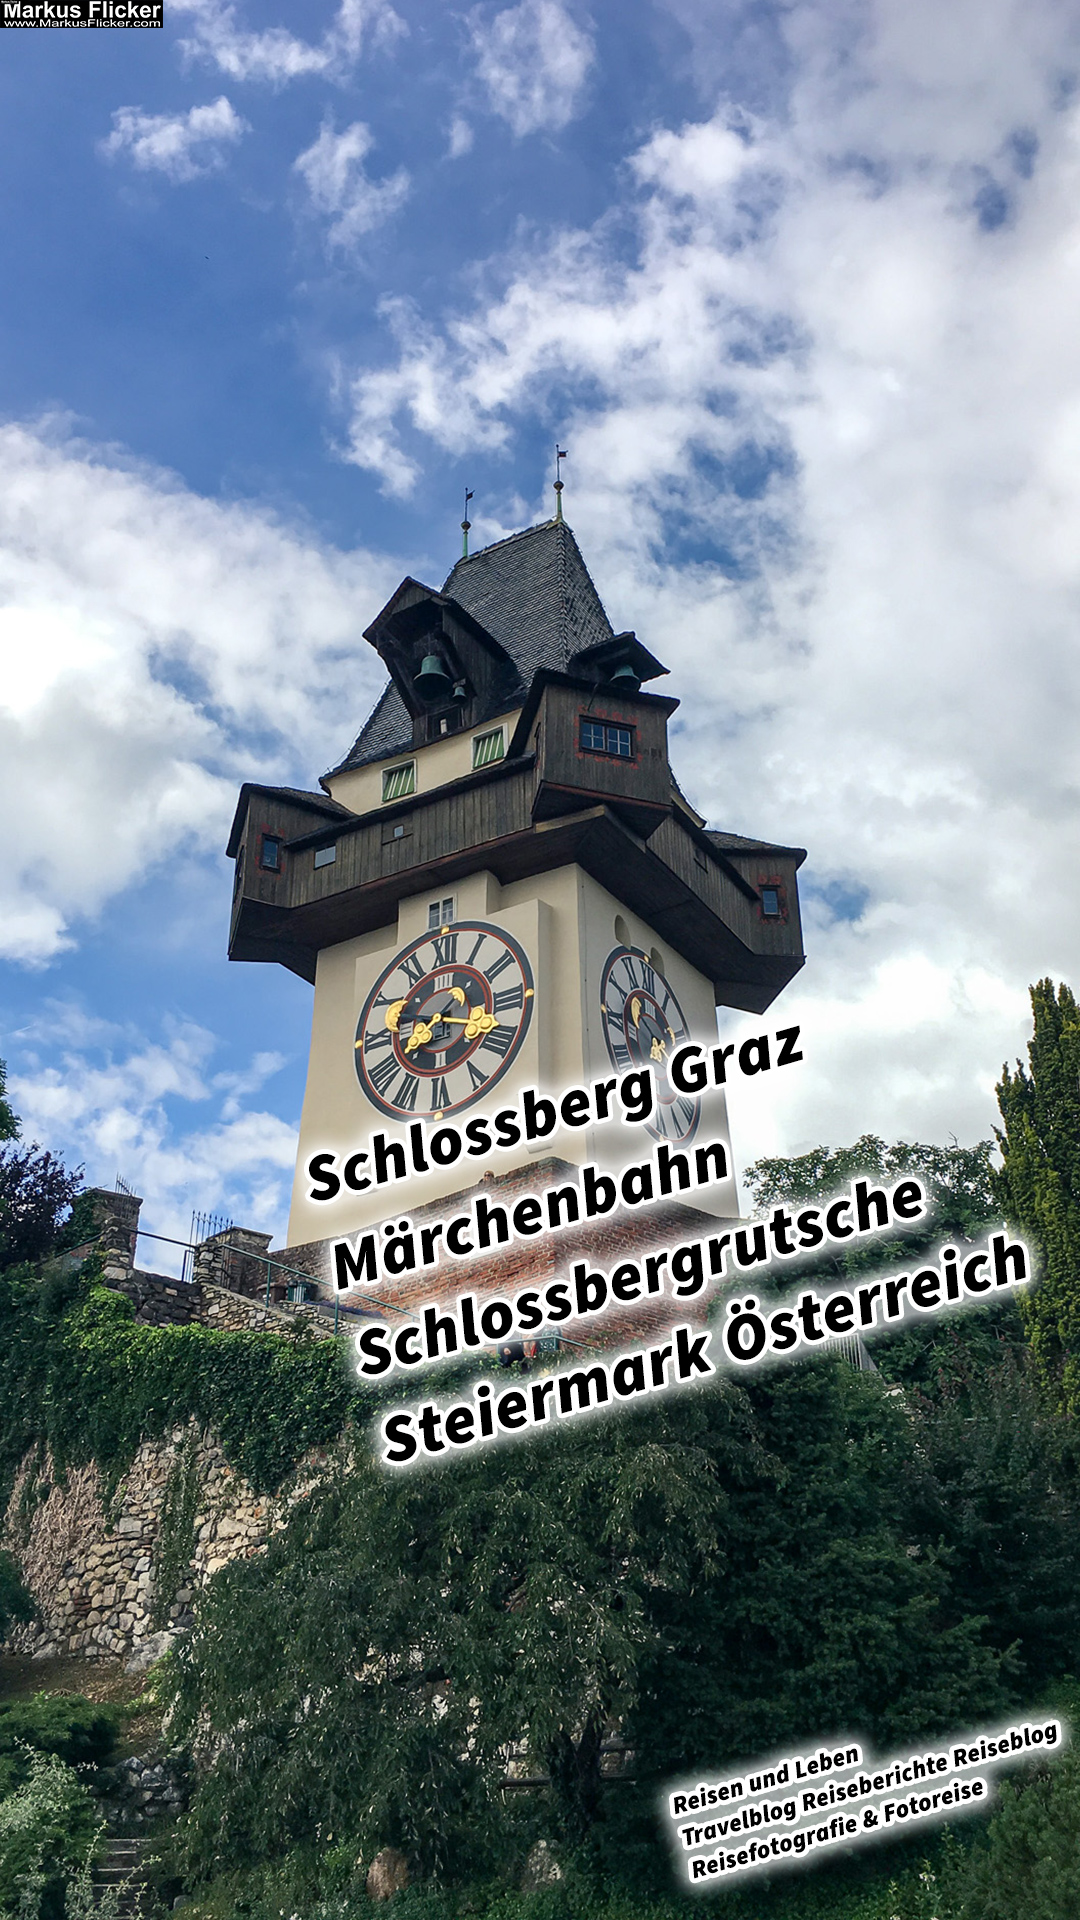 Schlossberg Graz Märchenbahn Schlossbergrutsche Steiermark Österreich